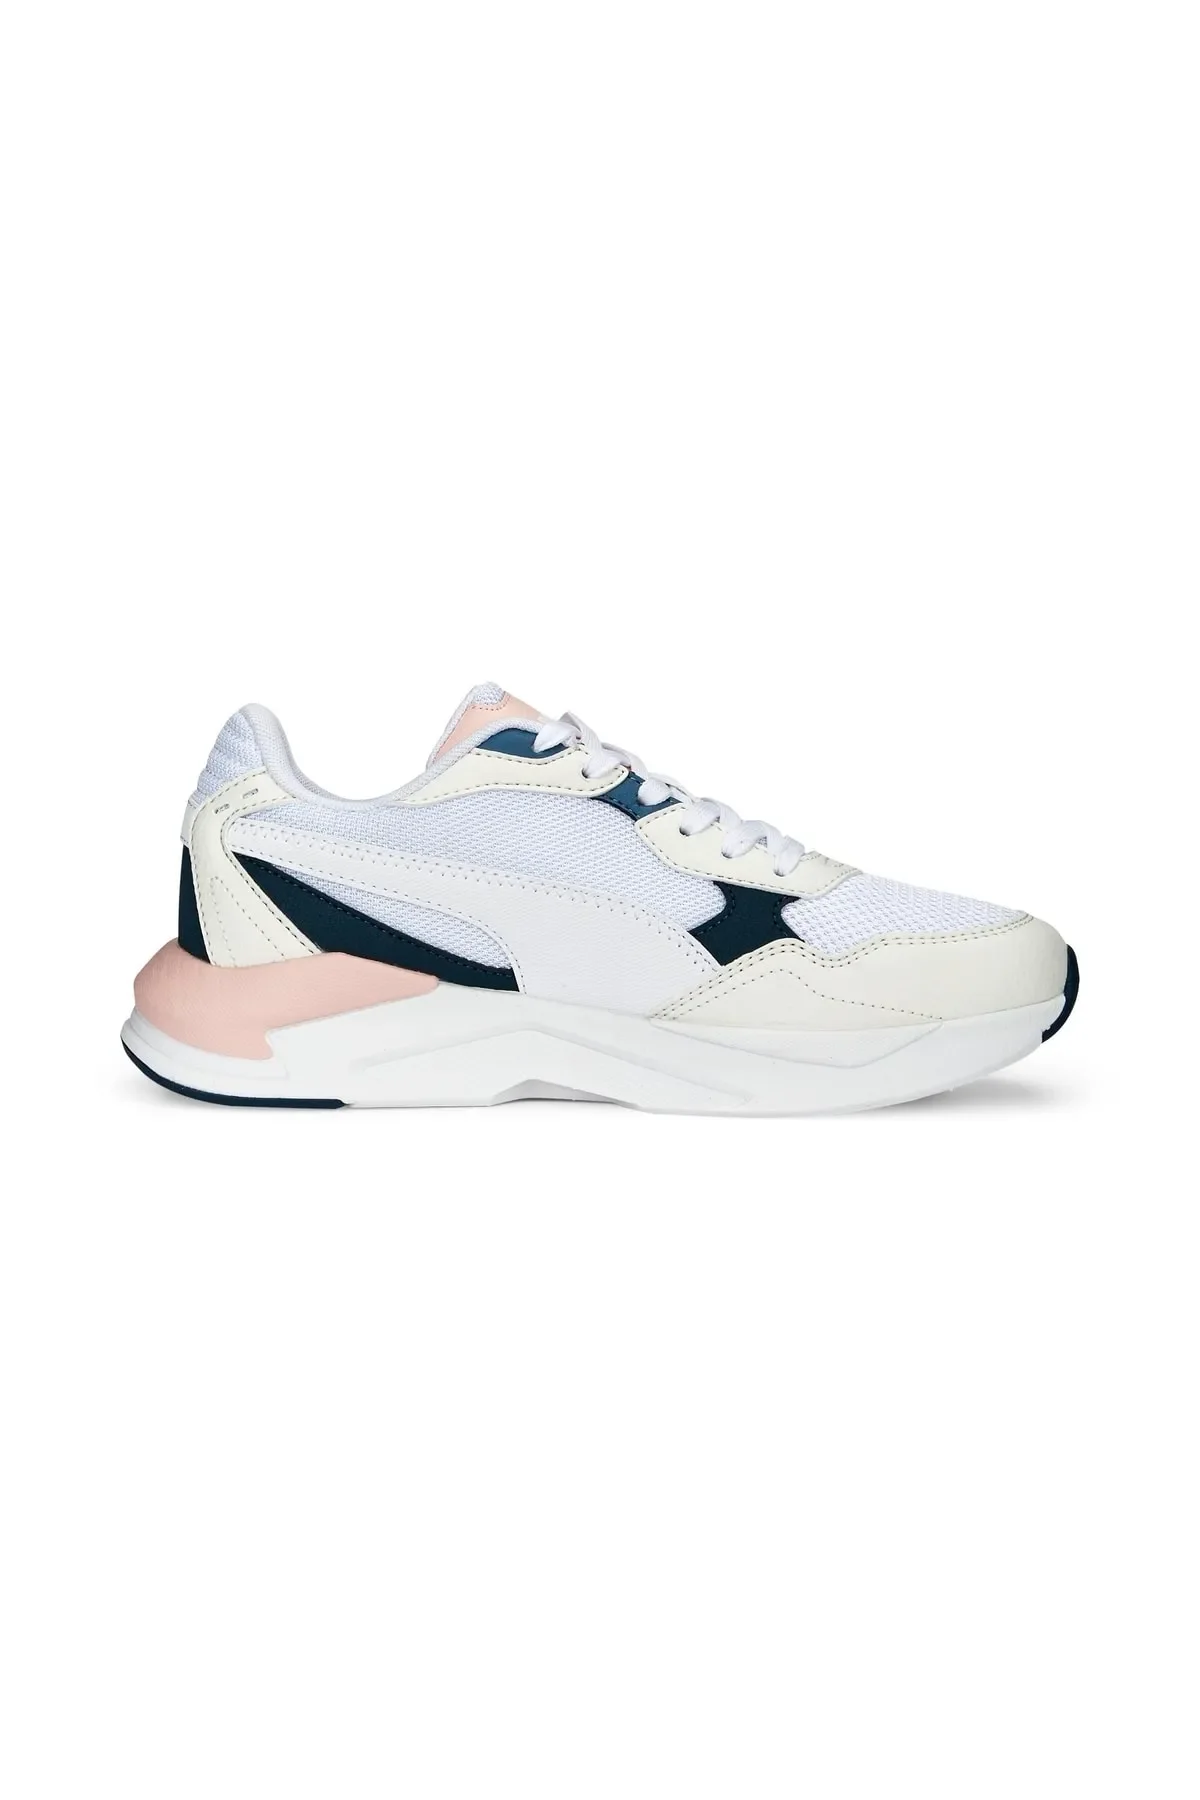 X-Ray Speed Lite - Kadın Sneaker Ayakkabı 384639 -Beyaz - 2